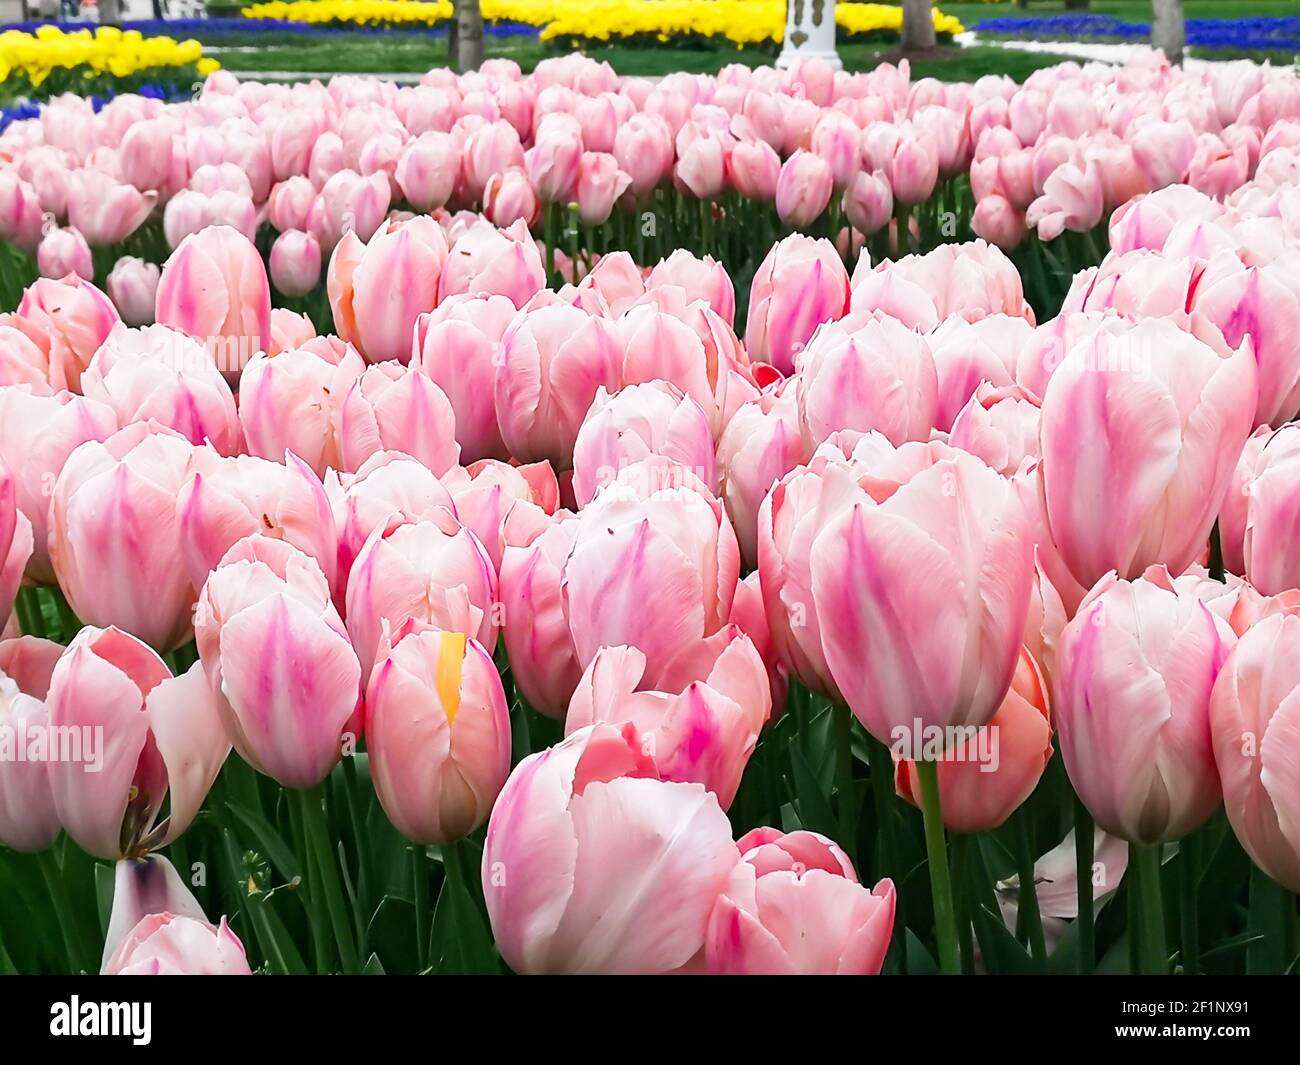 Nombreux tulipes romantiques et de saison. Un champ de fleurs roses et blanches. Bouquet cadeau de printemps. Magnifique fond naturel à la lumière du jour Banque D'Images